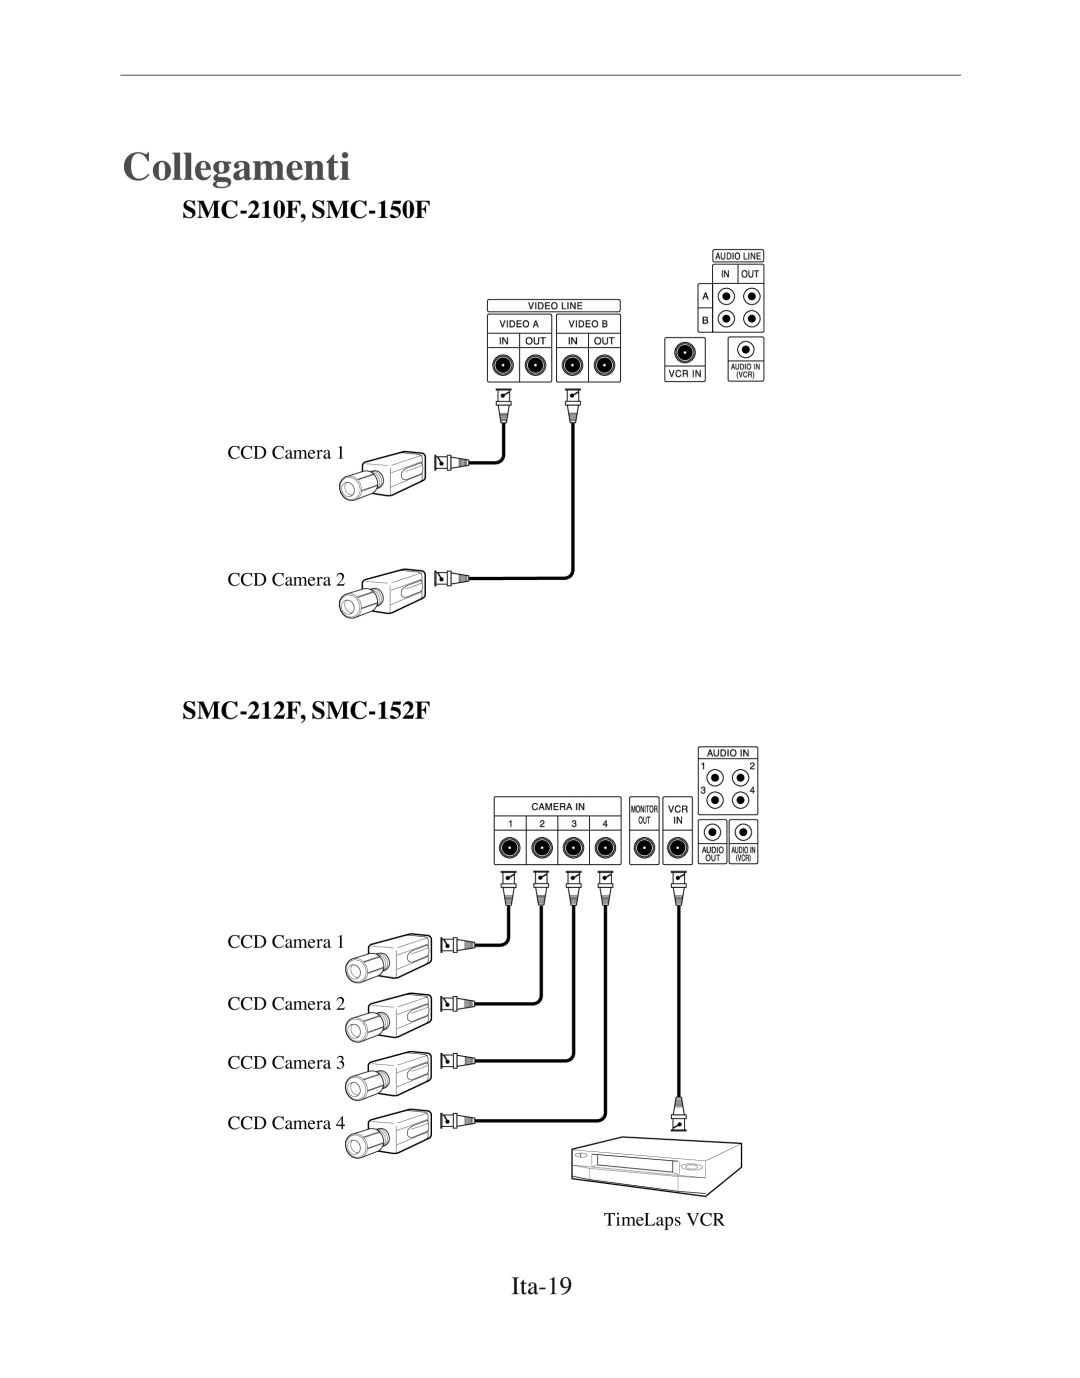 Samsung SMC-152FP manual Collegamenti, SMC-210F, SMC-150F, SMC-212F, SMC-152F, Ita-19 